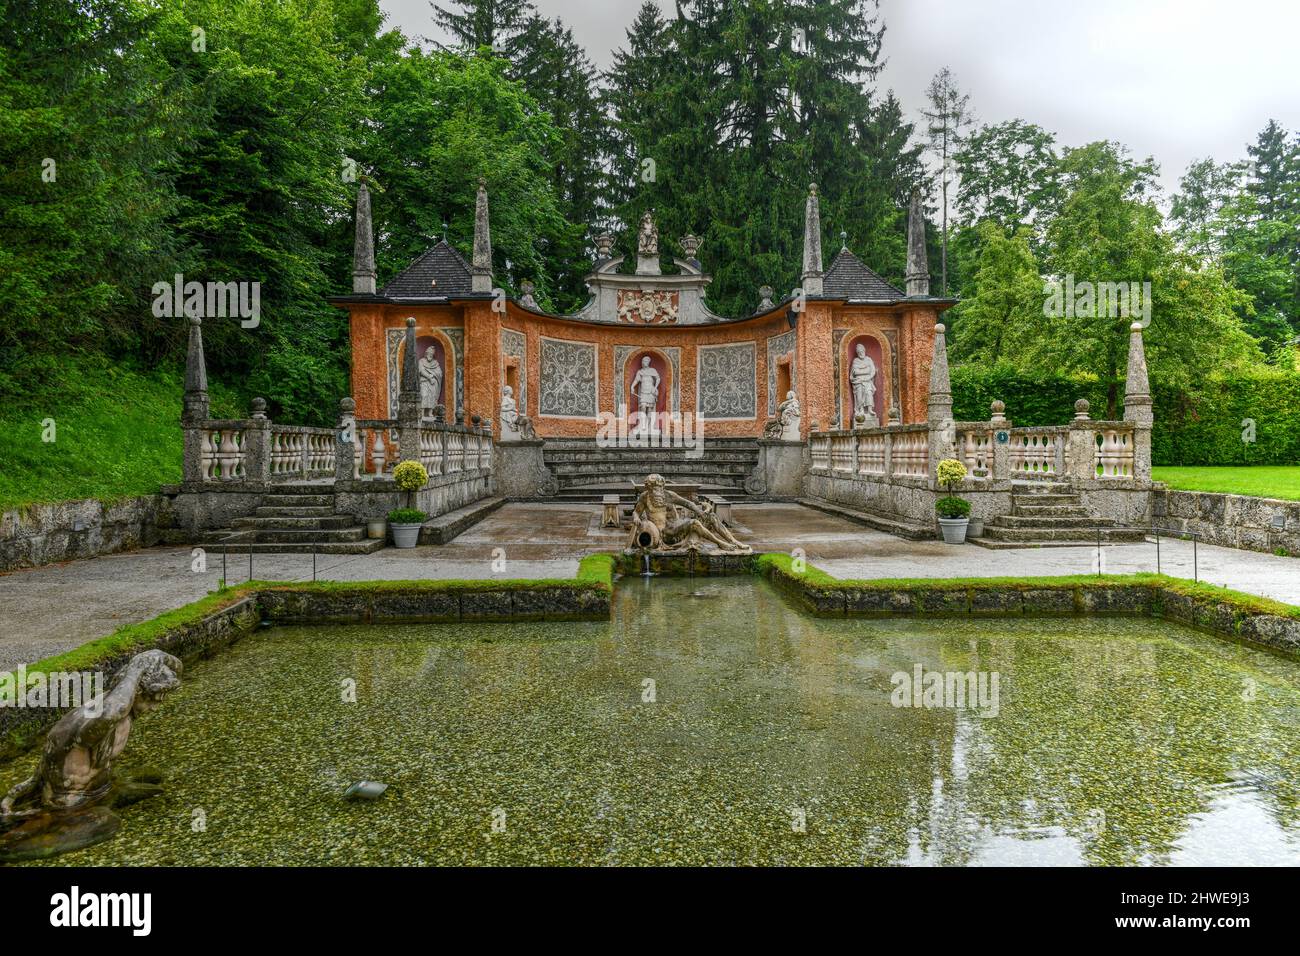 Palais Hellbrunn, une villa baroque ancienne de taille palatiale, près de Morzg, un quartier sud de la ville de Salzbourg, au Banque D'Images